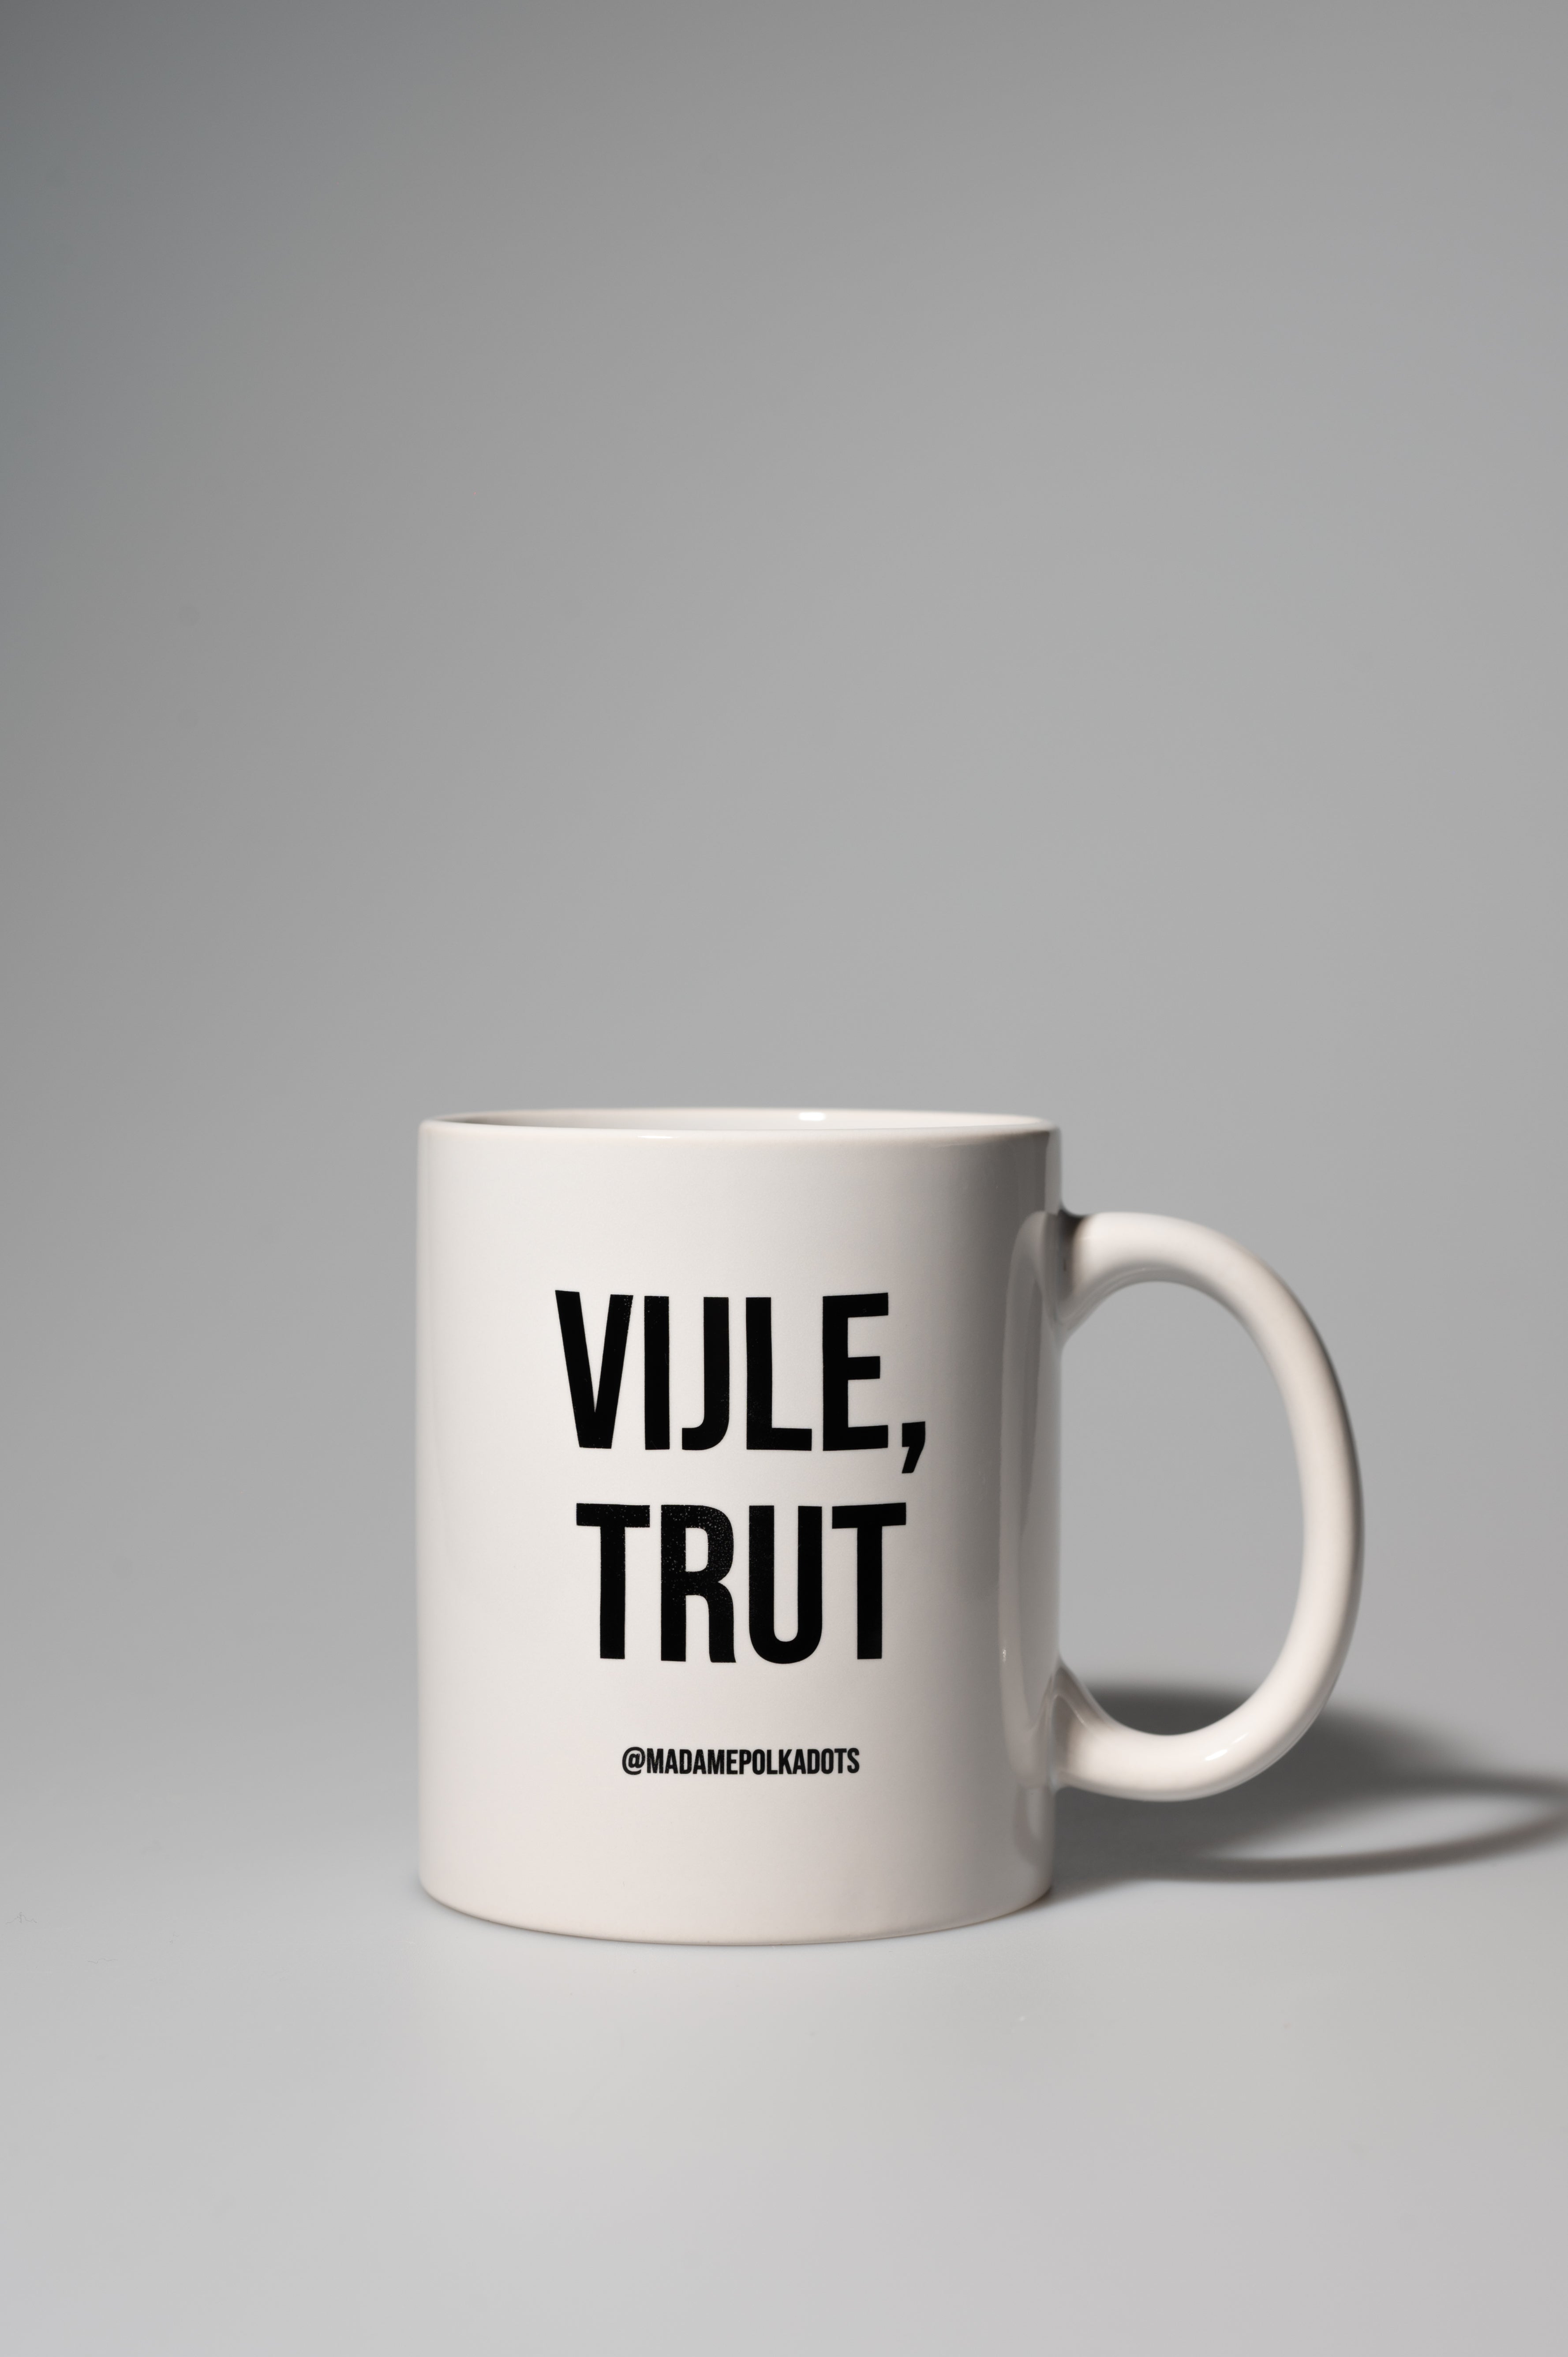 Vijle, trut Coffee mug